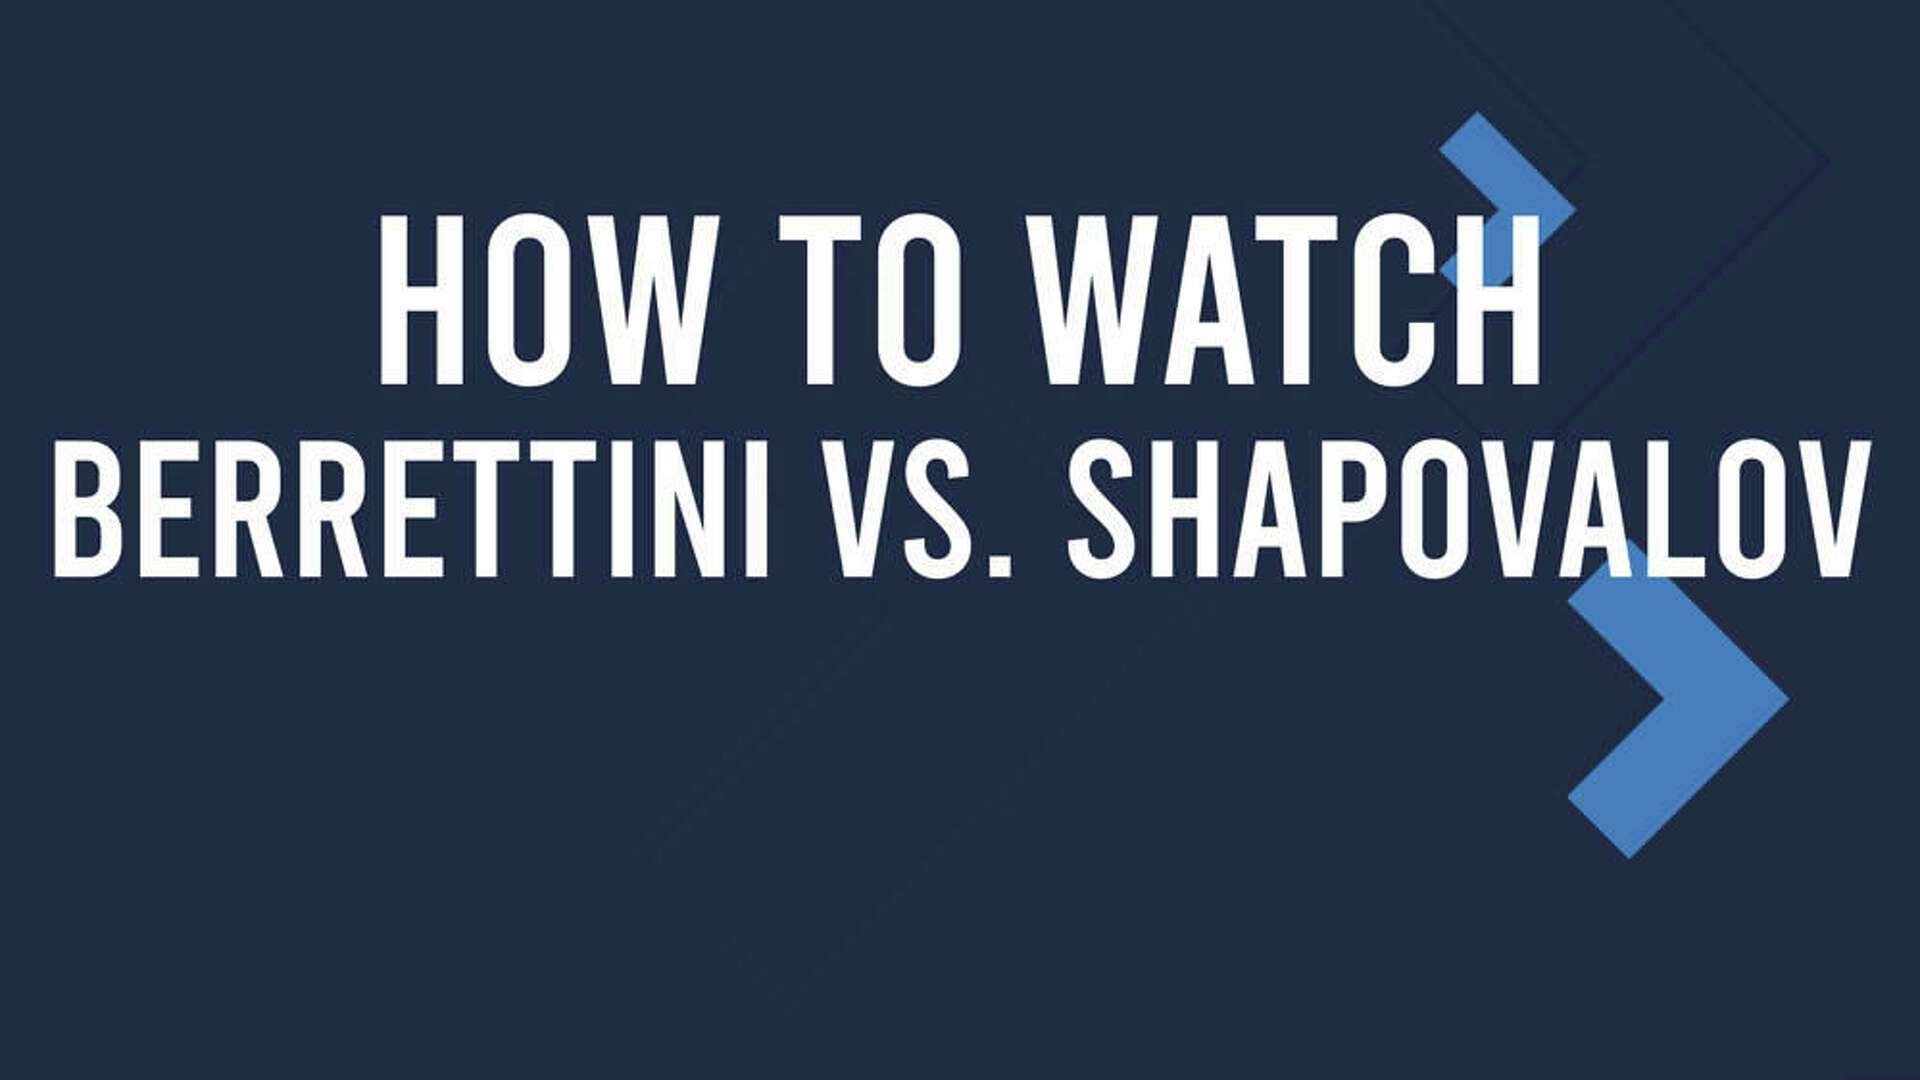 Berrettini vs. Shapovalov Match Live Stream & Boss Open TV Channel